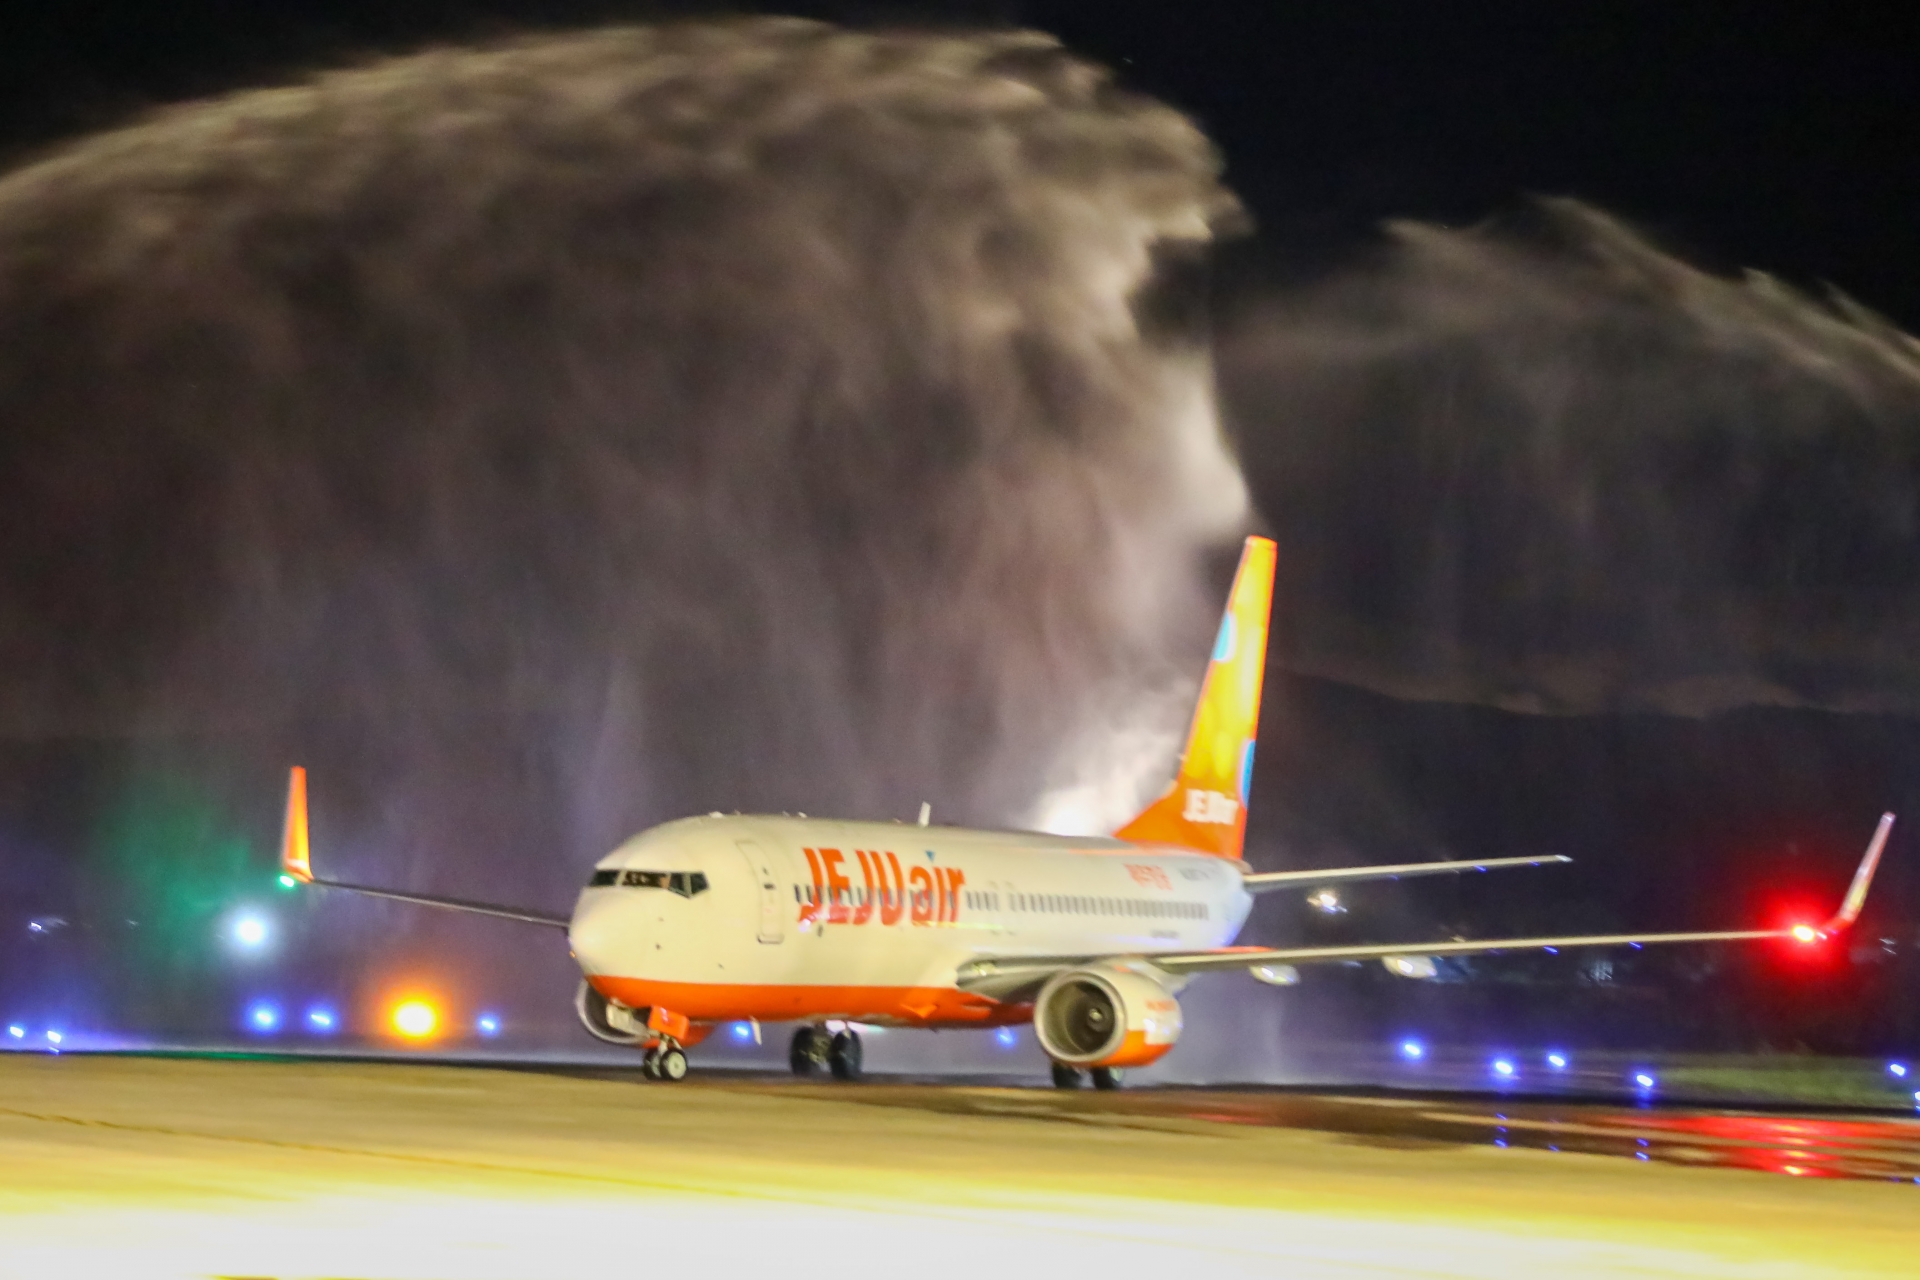 Lâm Đồng đón chuyến bay thương mại đầu tiên từ Incheon đến Liên Khương của hãng hàng không JeJu Air